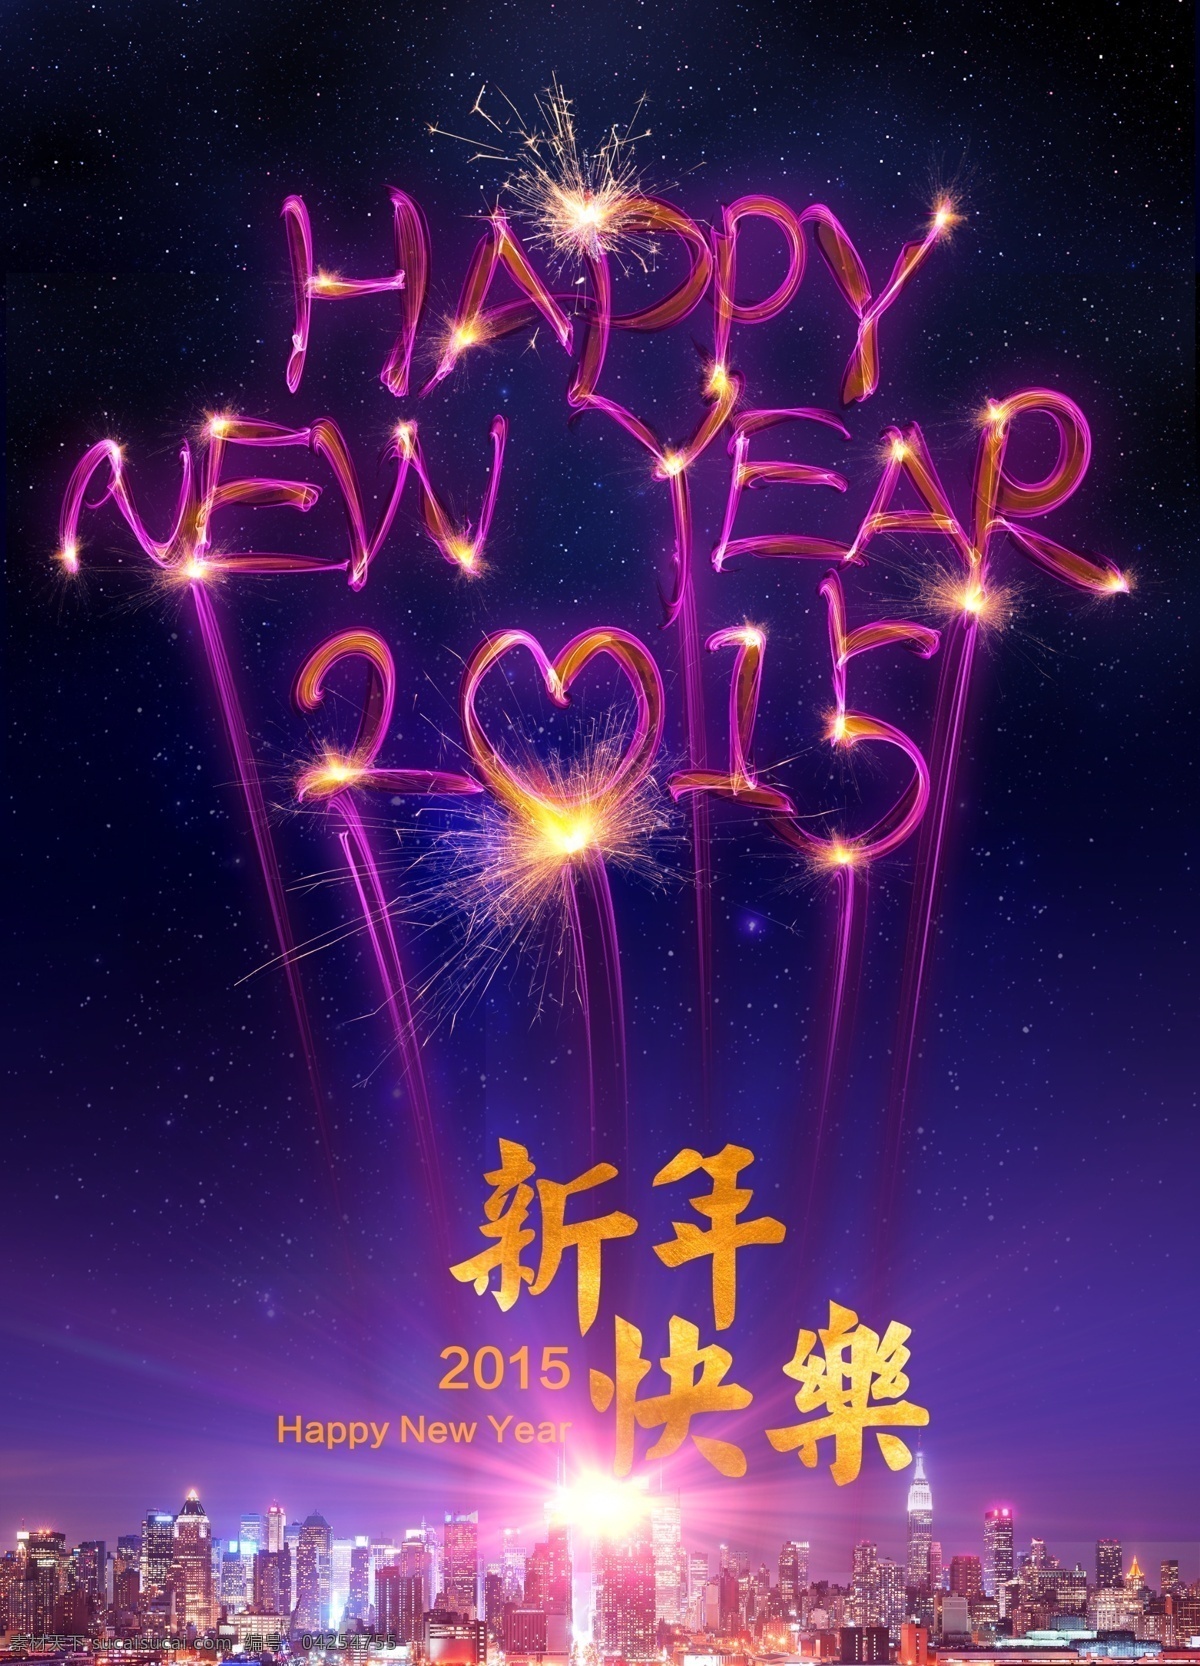 新年 快乐 酷 炫 海报 2015 新年快乐 烟火 炫酷字体 psd源文件